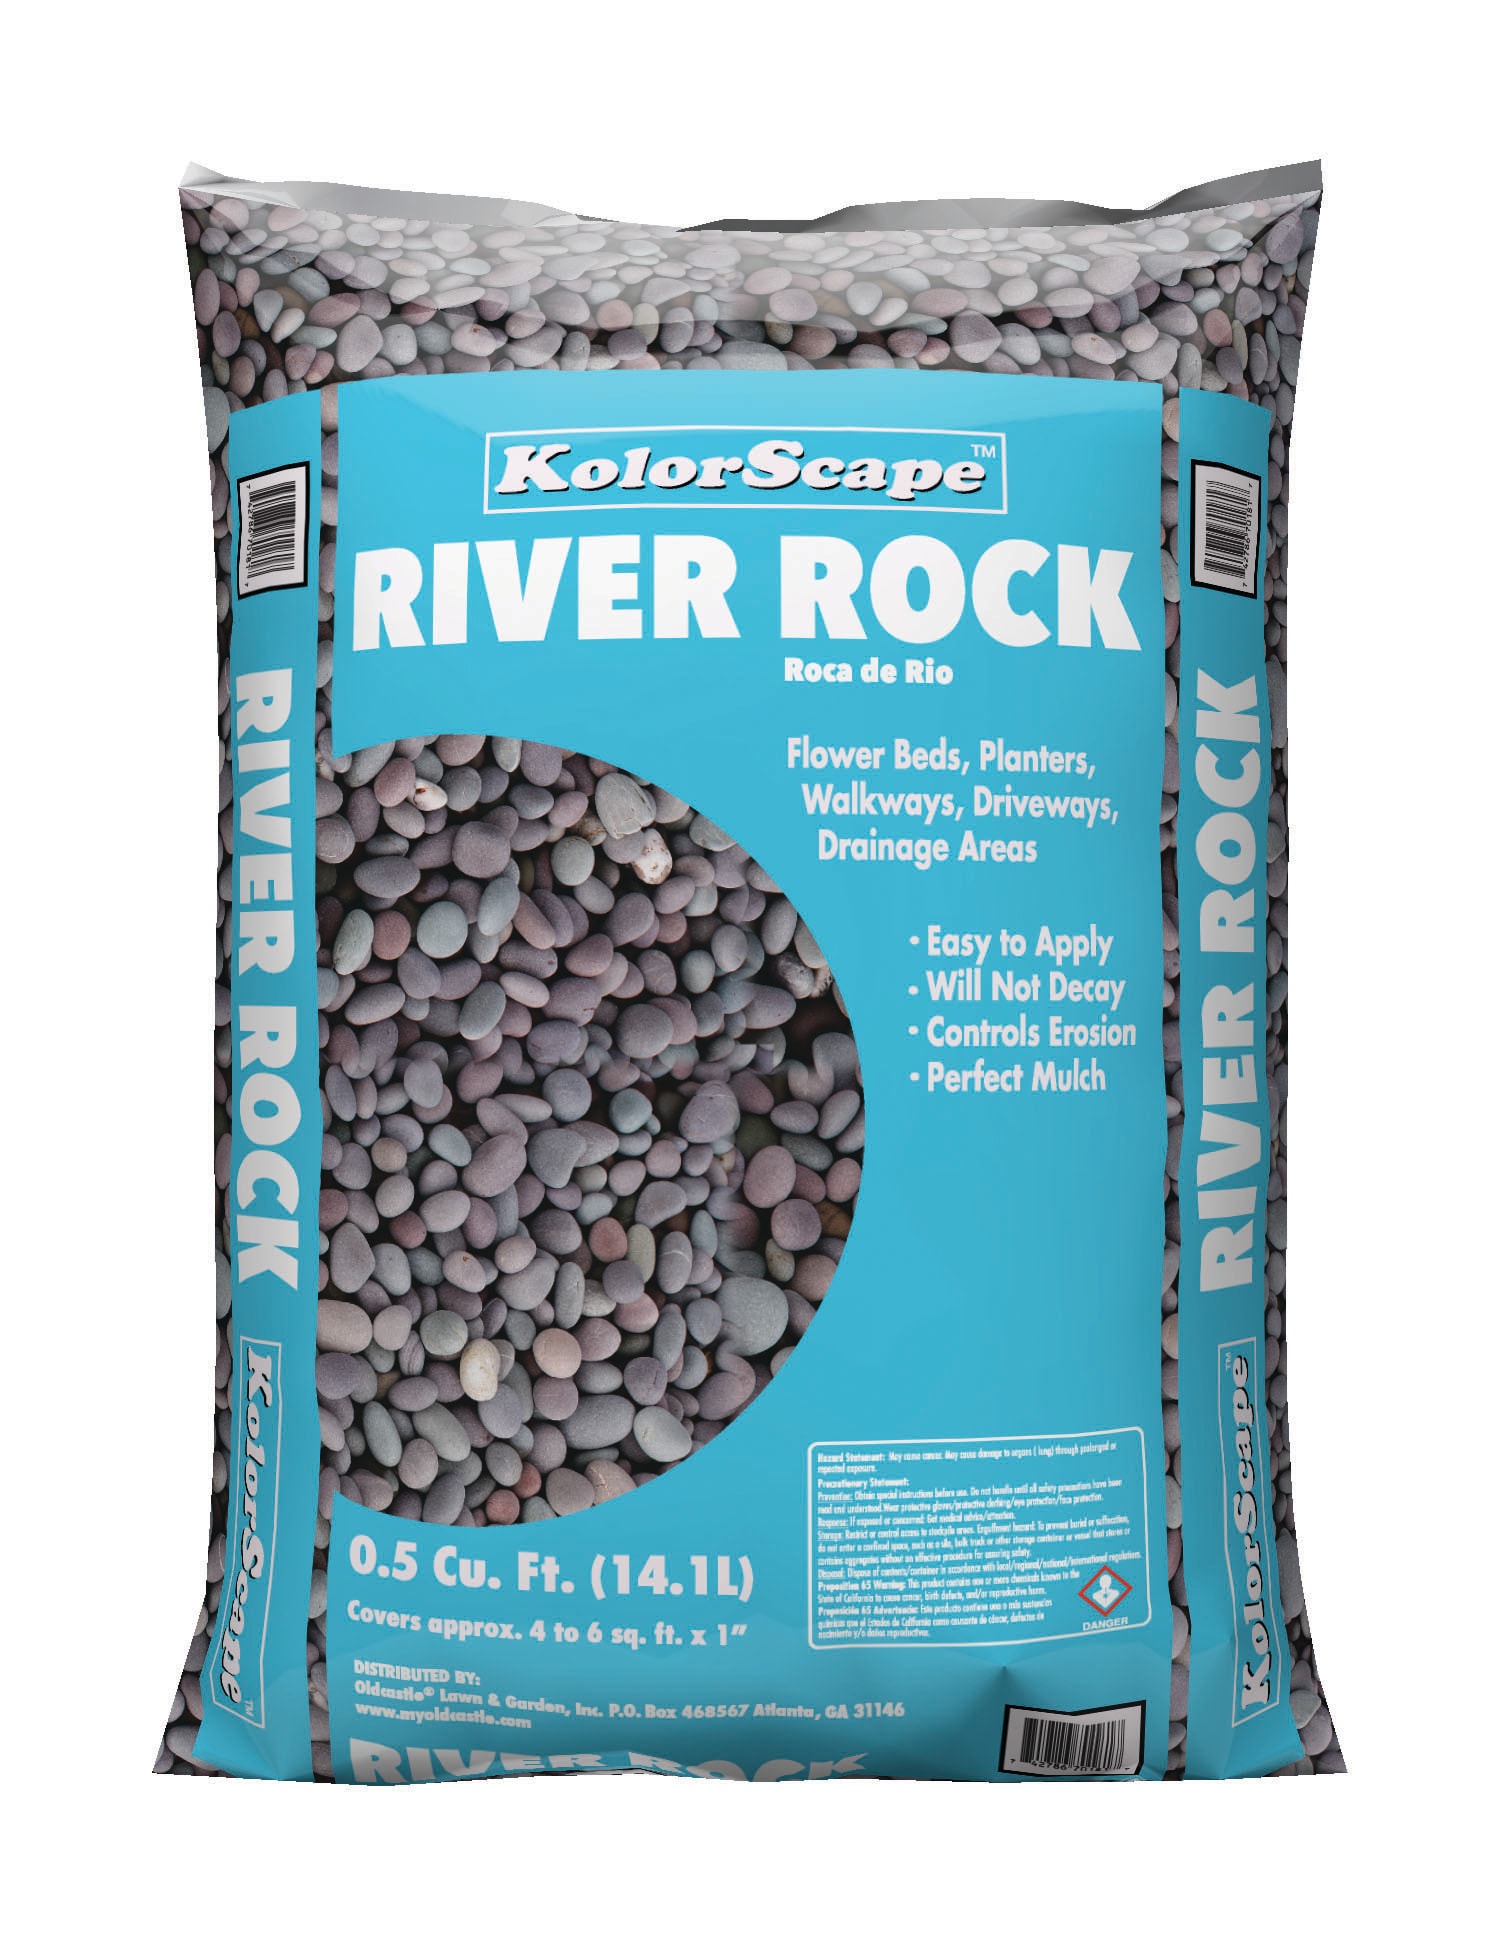 Landscaping Rocks | Salt Lake County, UT | The Dirt Bag